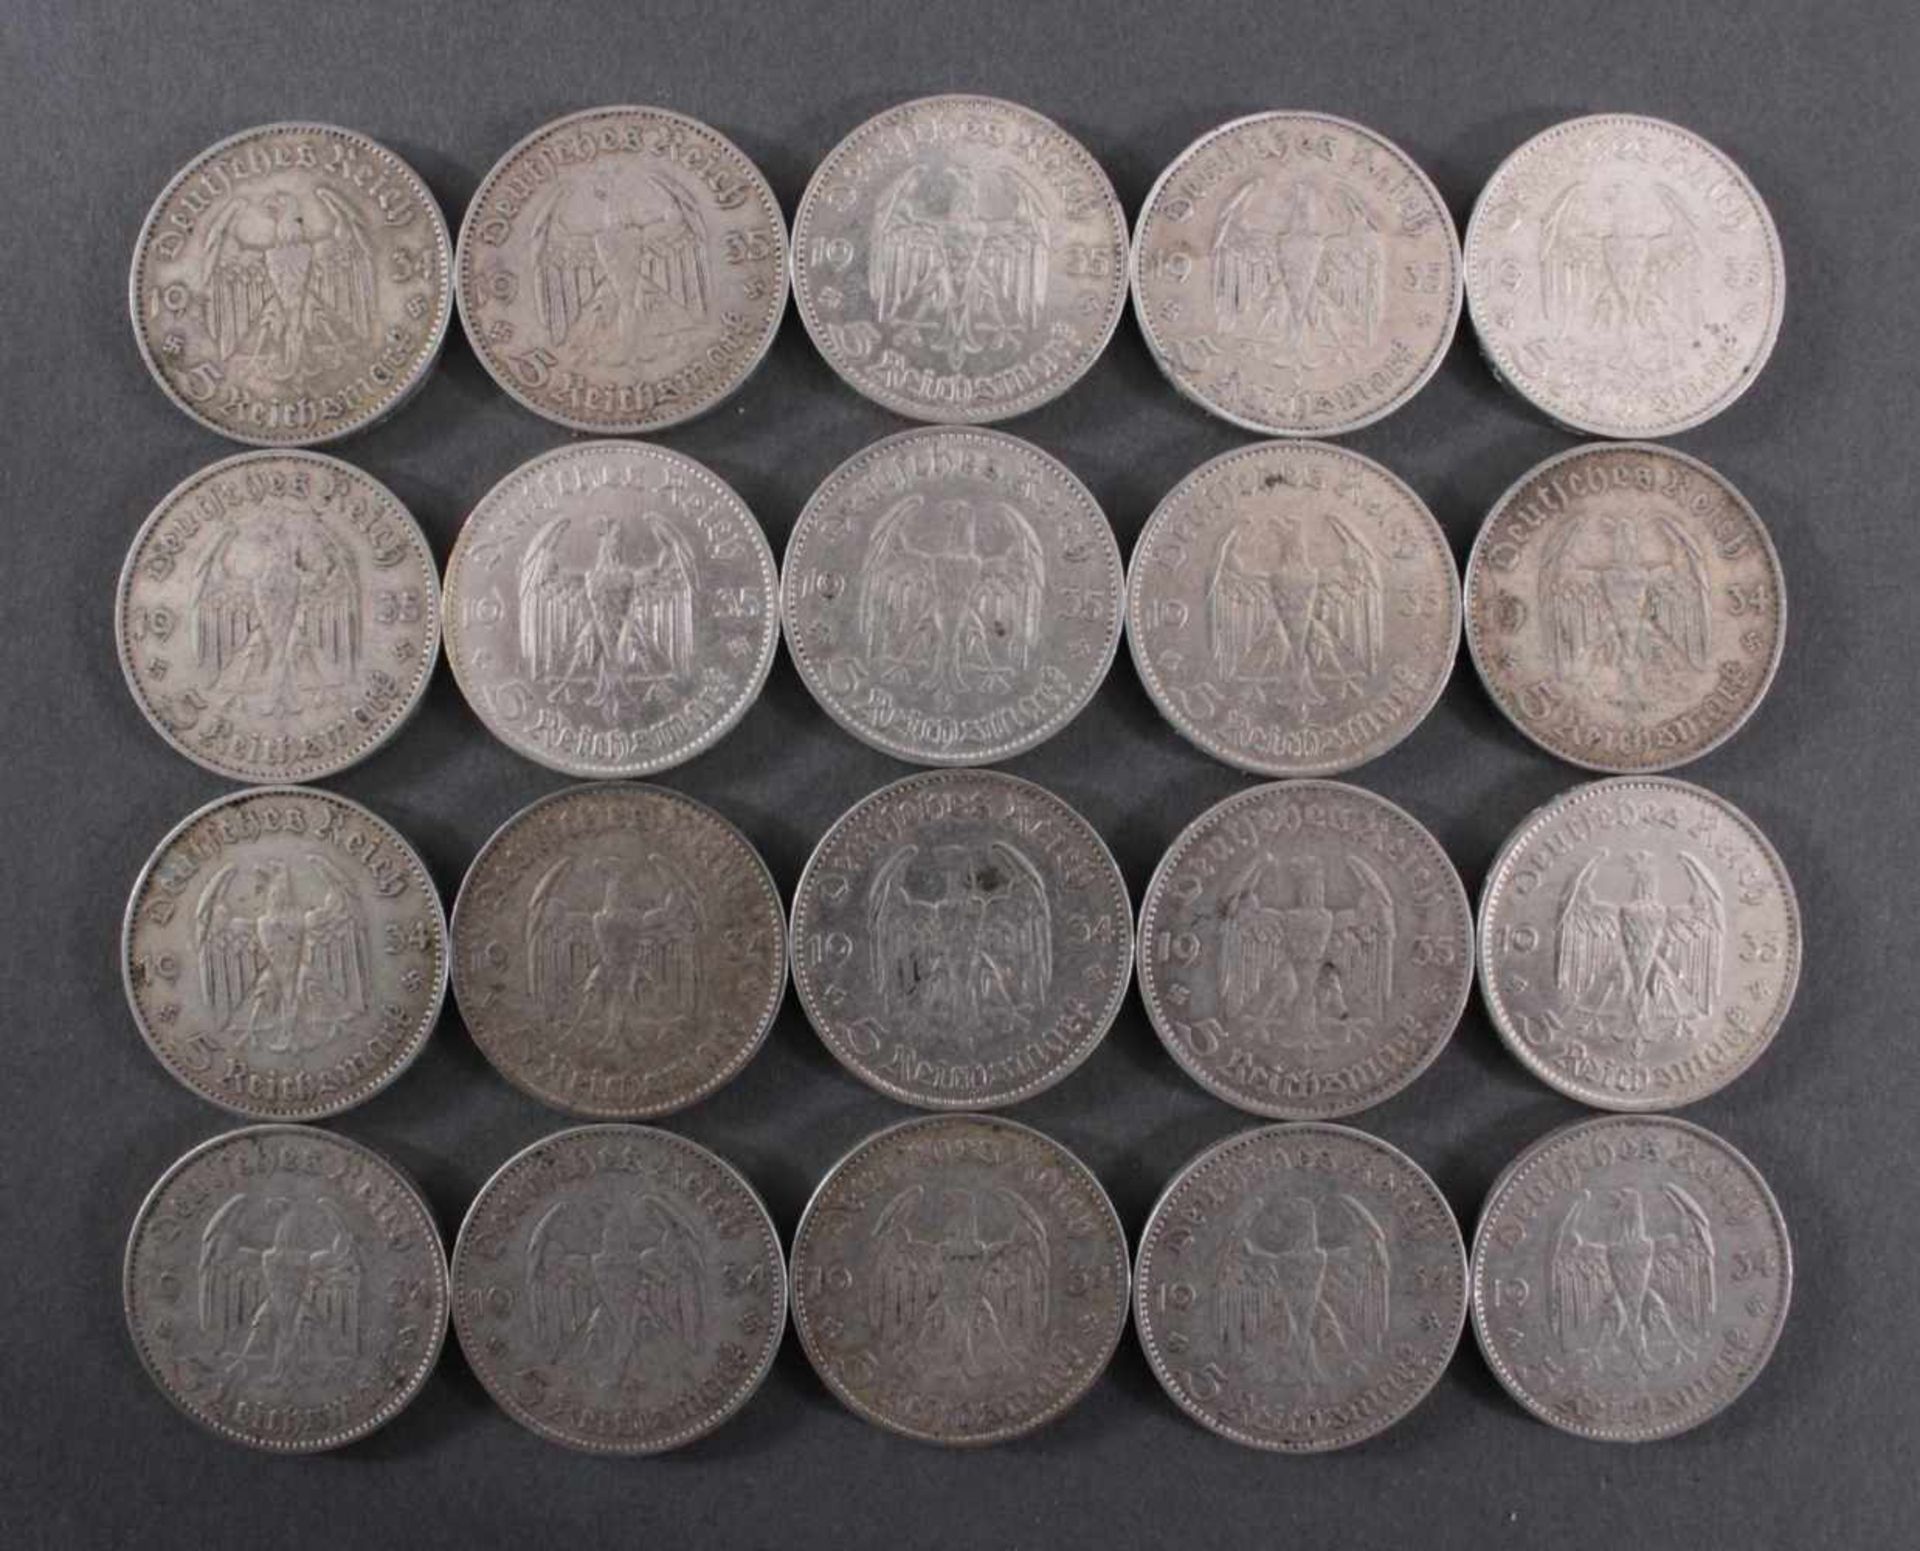 Deutsches Reich, 20x 5 ReichsmarkSilber, 10x 5 Reichsmark 1935 D und 10x 5 Reichsmark 1934 J - Bild 2 aus 2